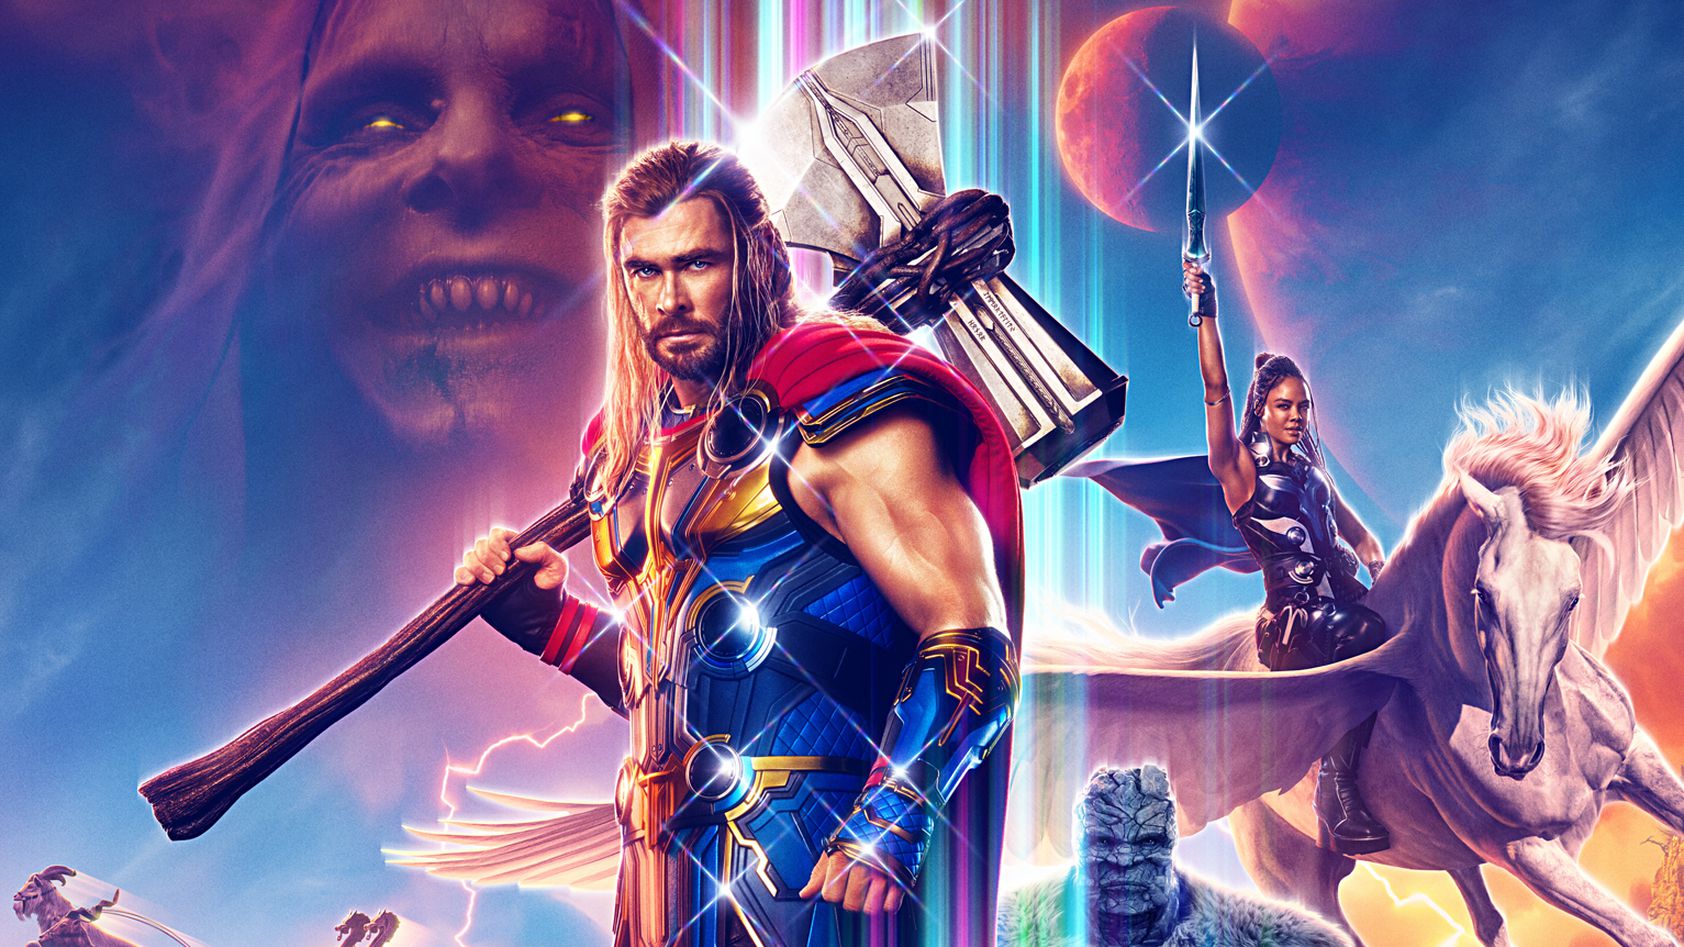 Thor: Ragnarok”: cinco coisas para esperar do novo filme da Marvel